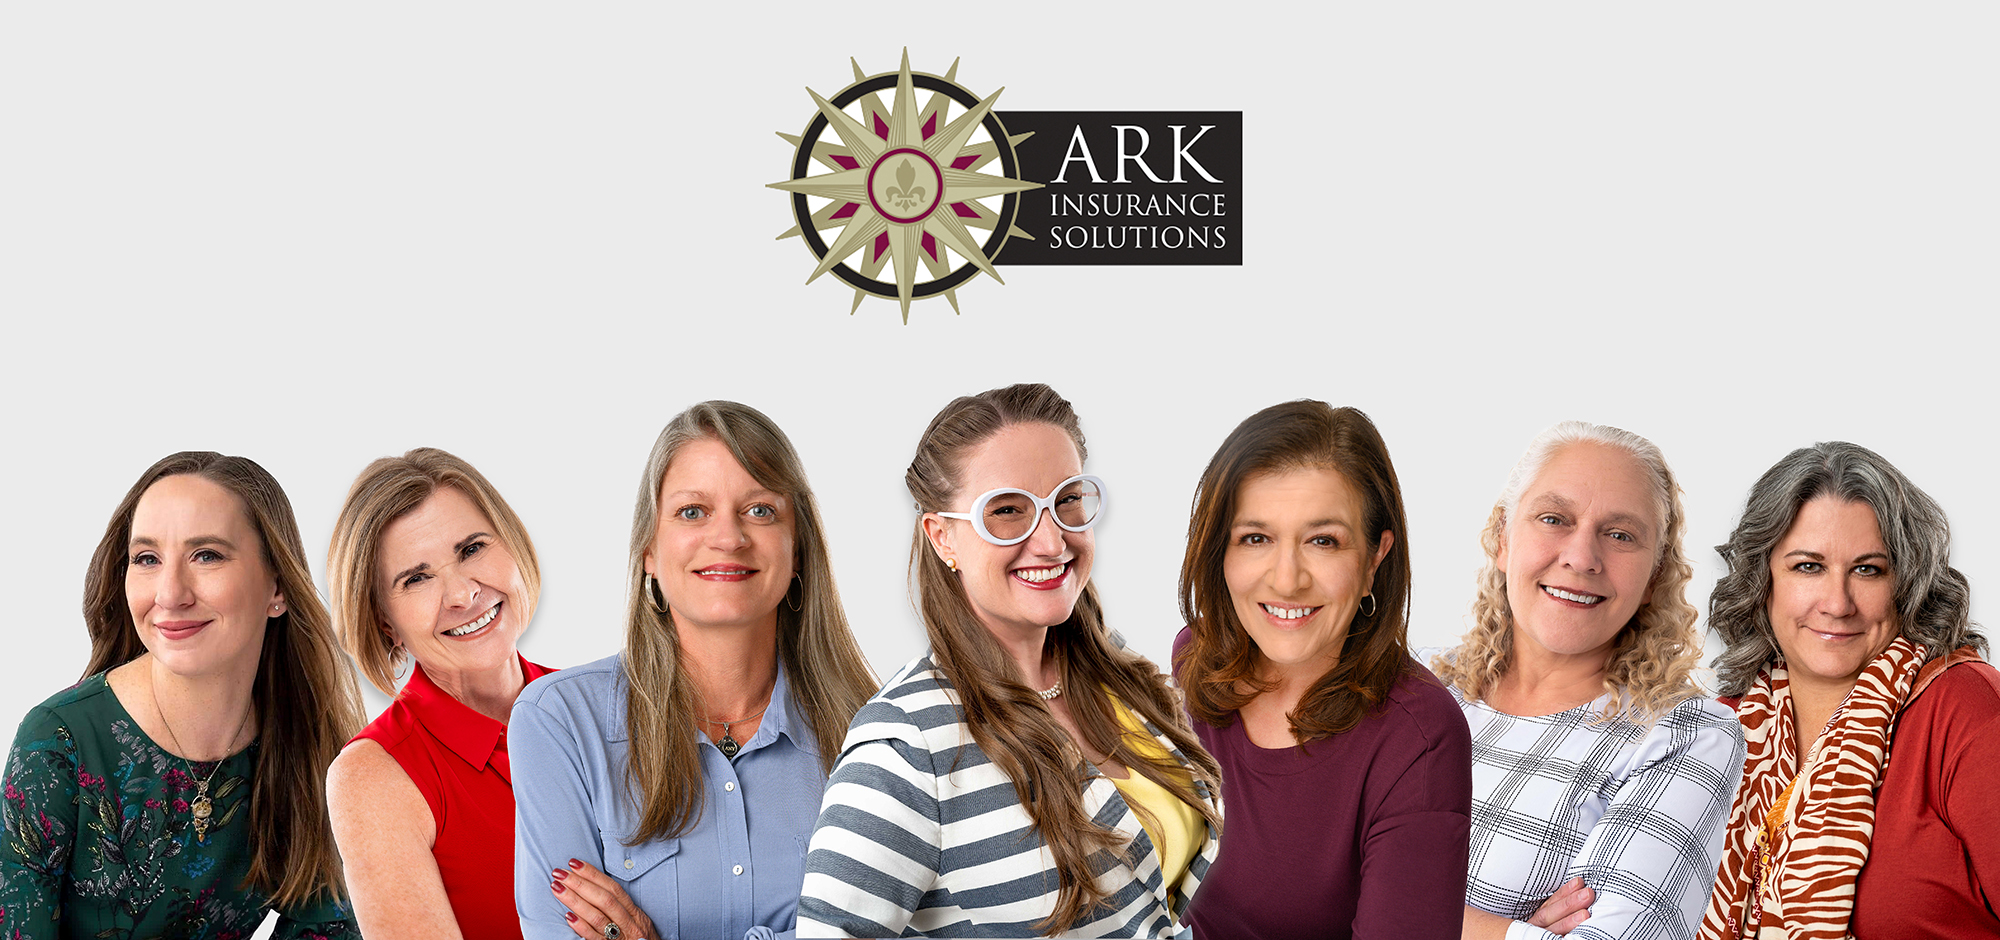 Ark Insurance Team